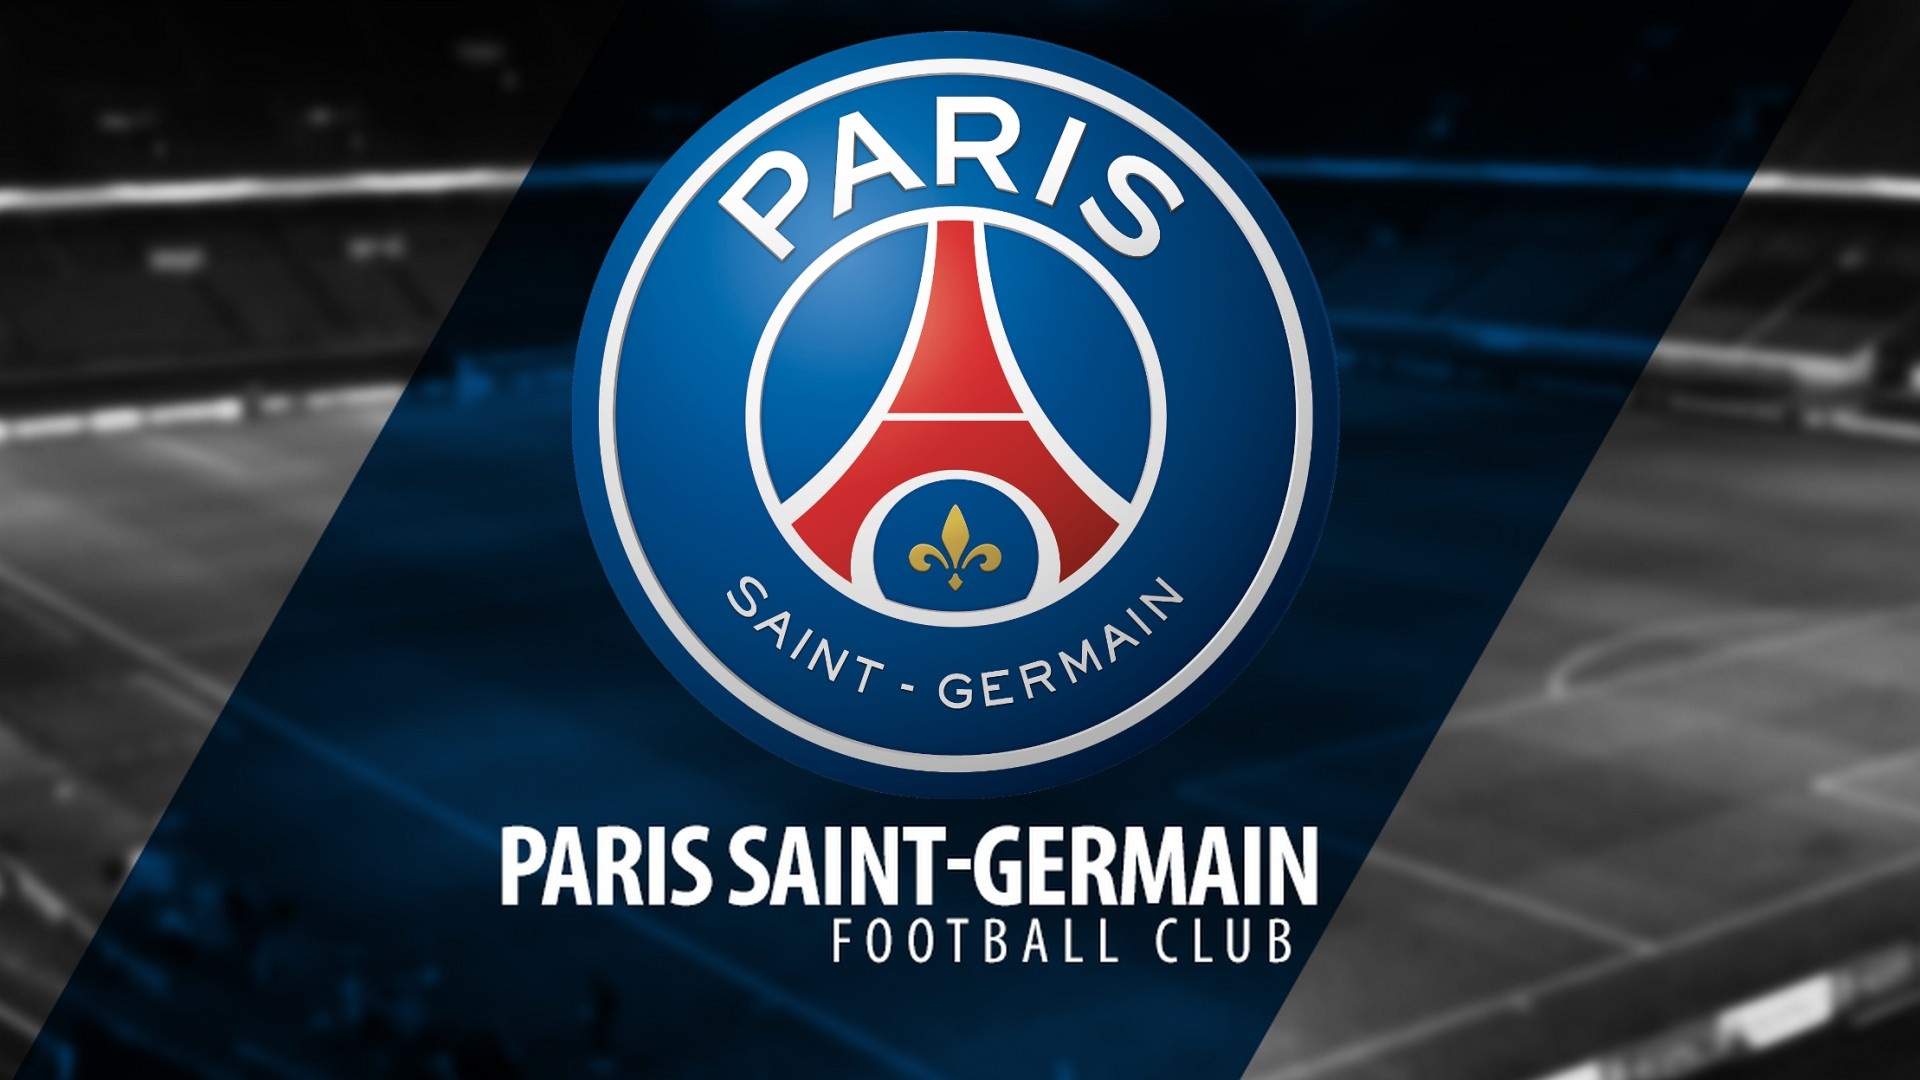 Paris Saint-Germain: Internationally renowned football club from France. 1920x1080 Full HD Wallpaper.